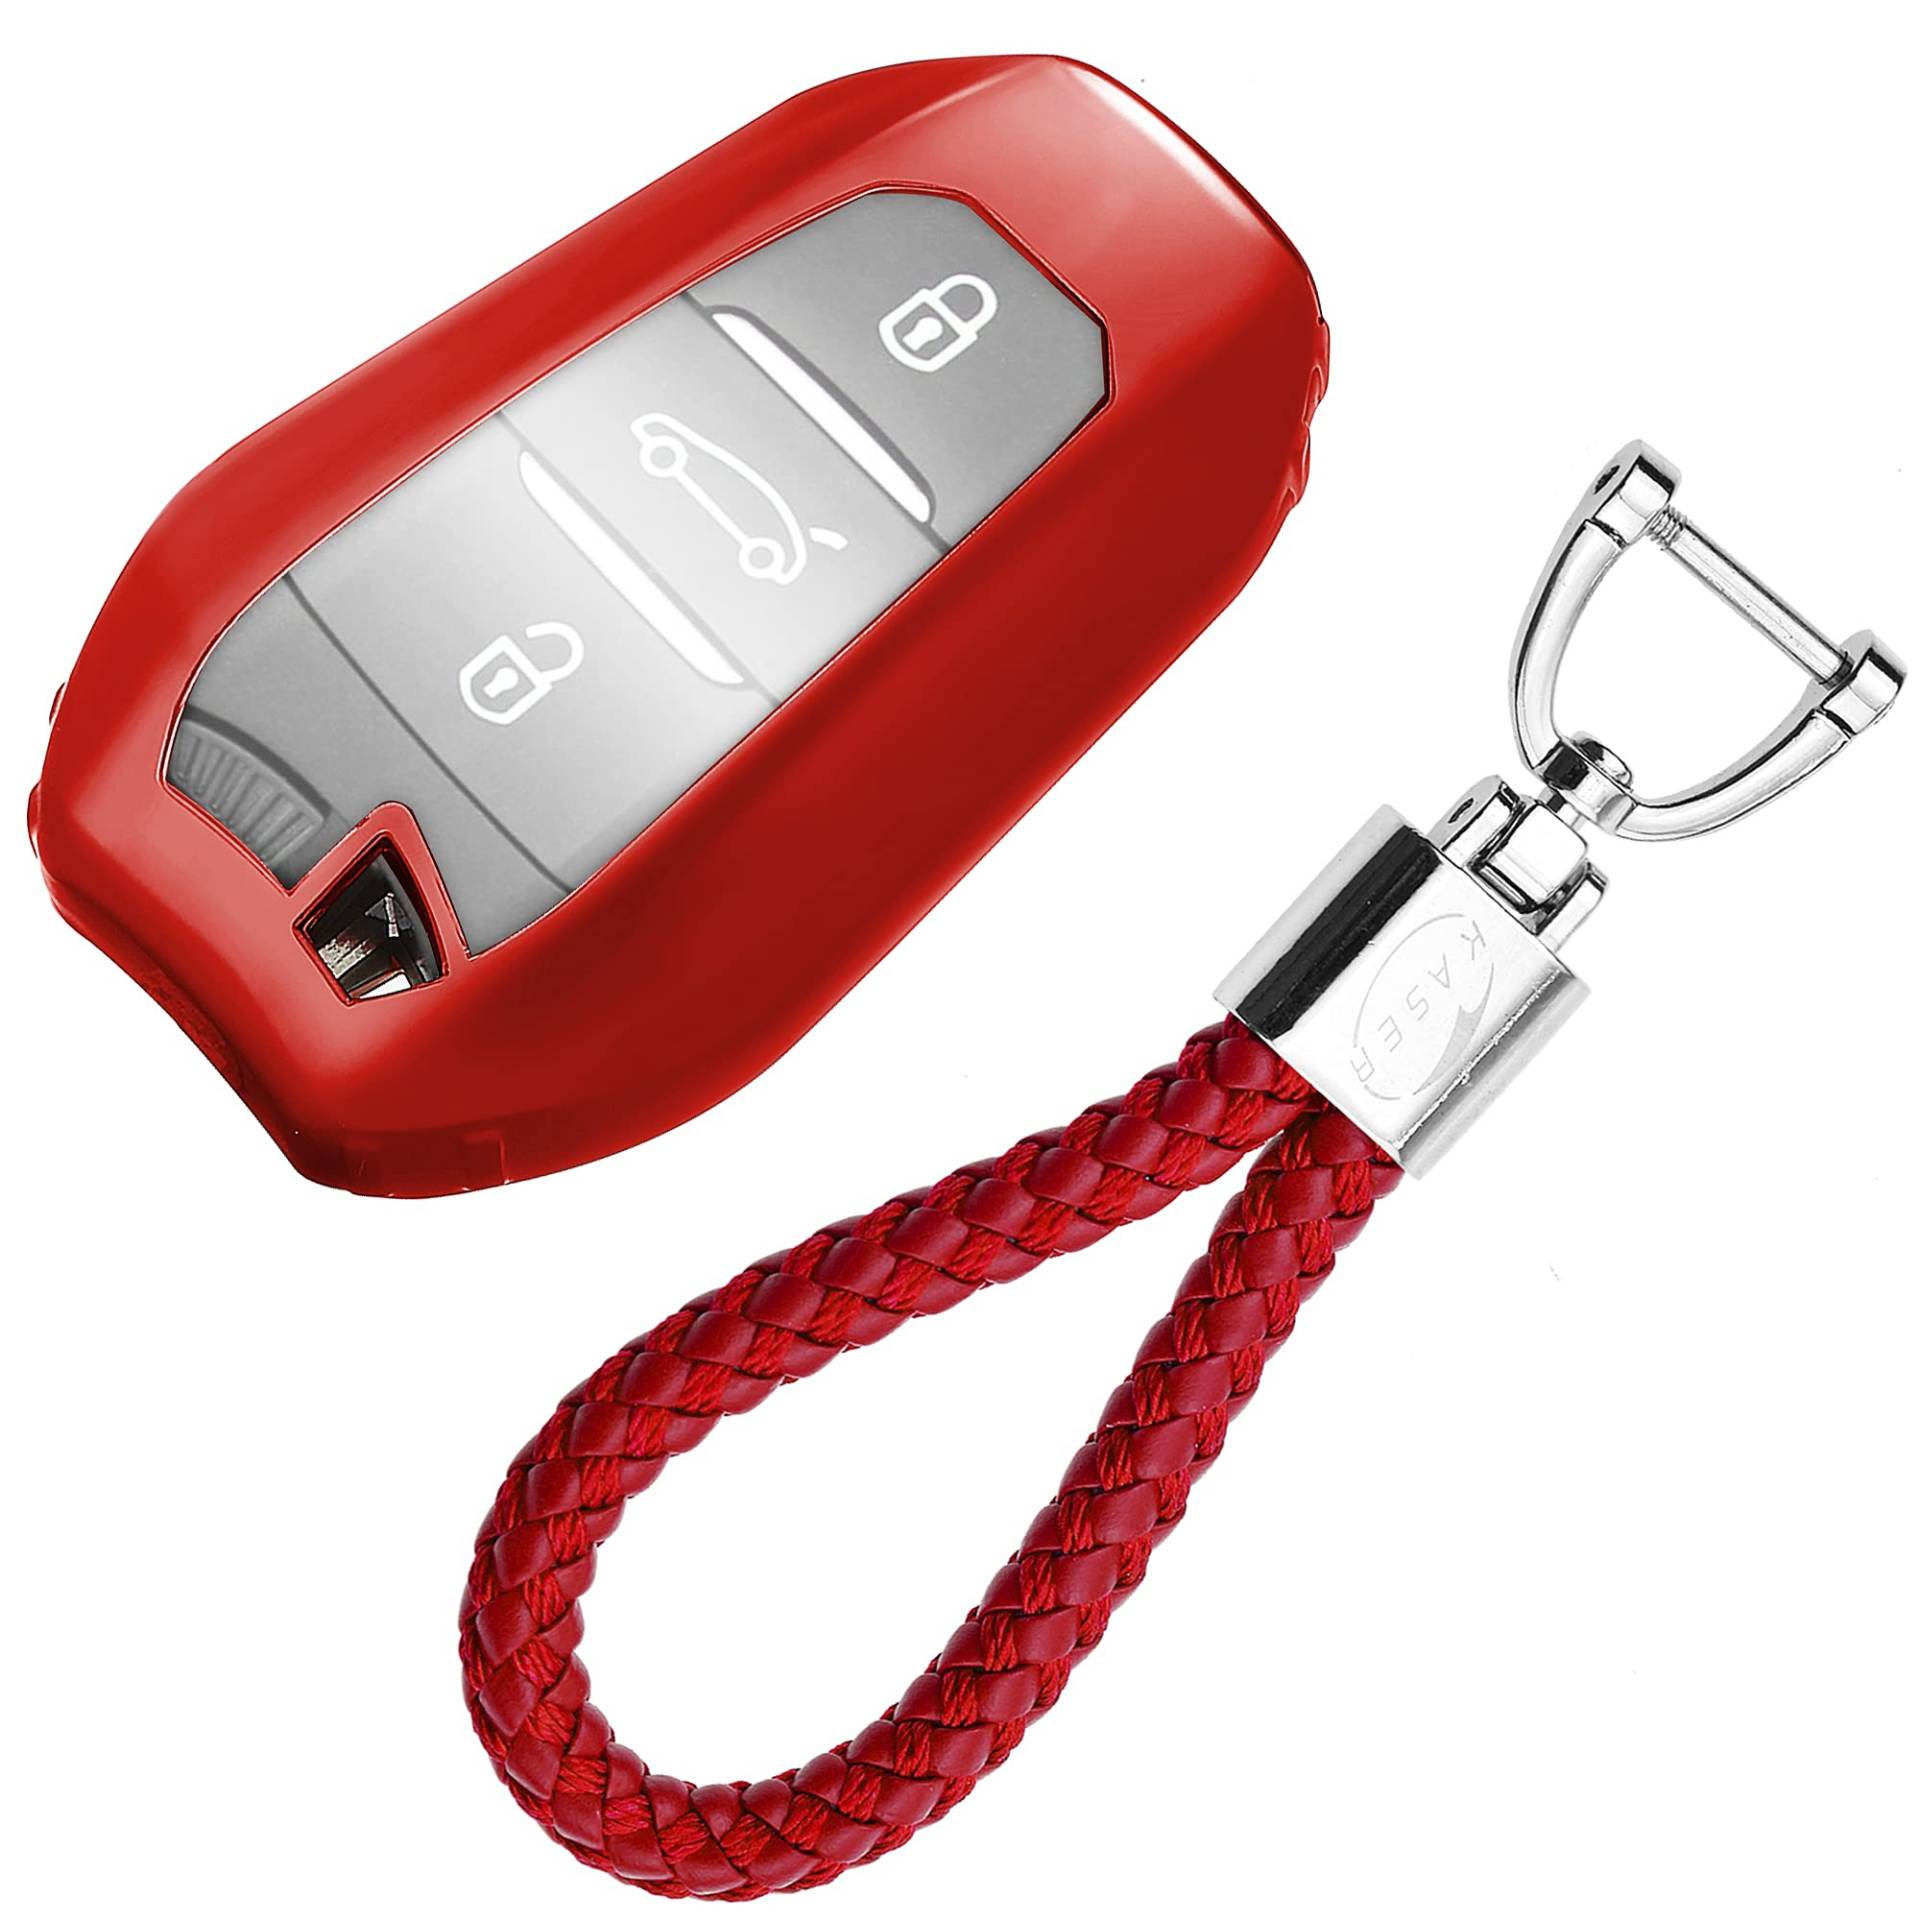 KASER Autoschlüssel Hülle kompatibel für Peugeot Citroen Cover TPU Silikon Hochglanz Schutzhülle Schlüsselhülle Fernbedienung Keyless 3008 5008 Citroen DS Schlüsselbund (Rot) von Kaser